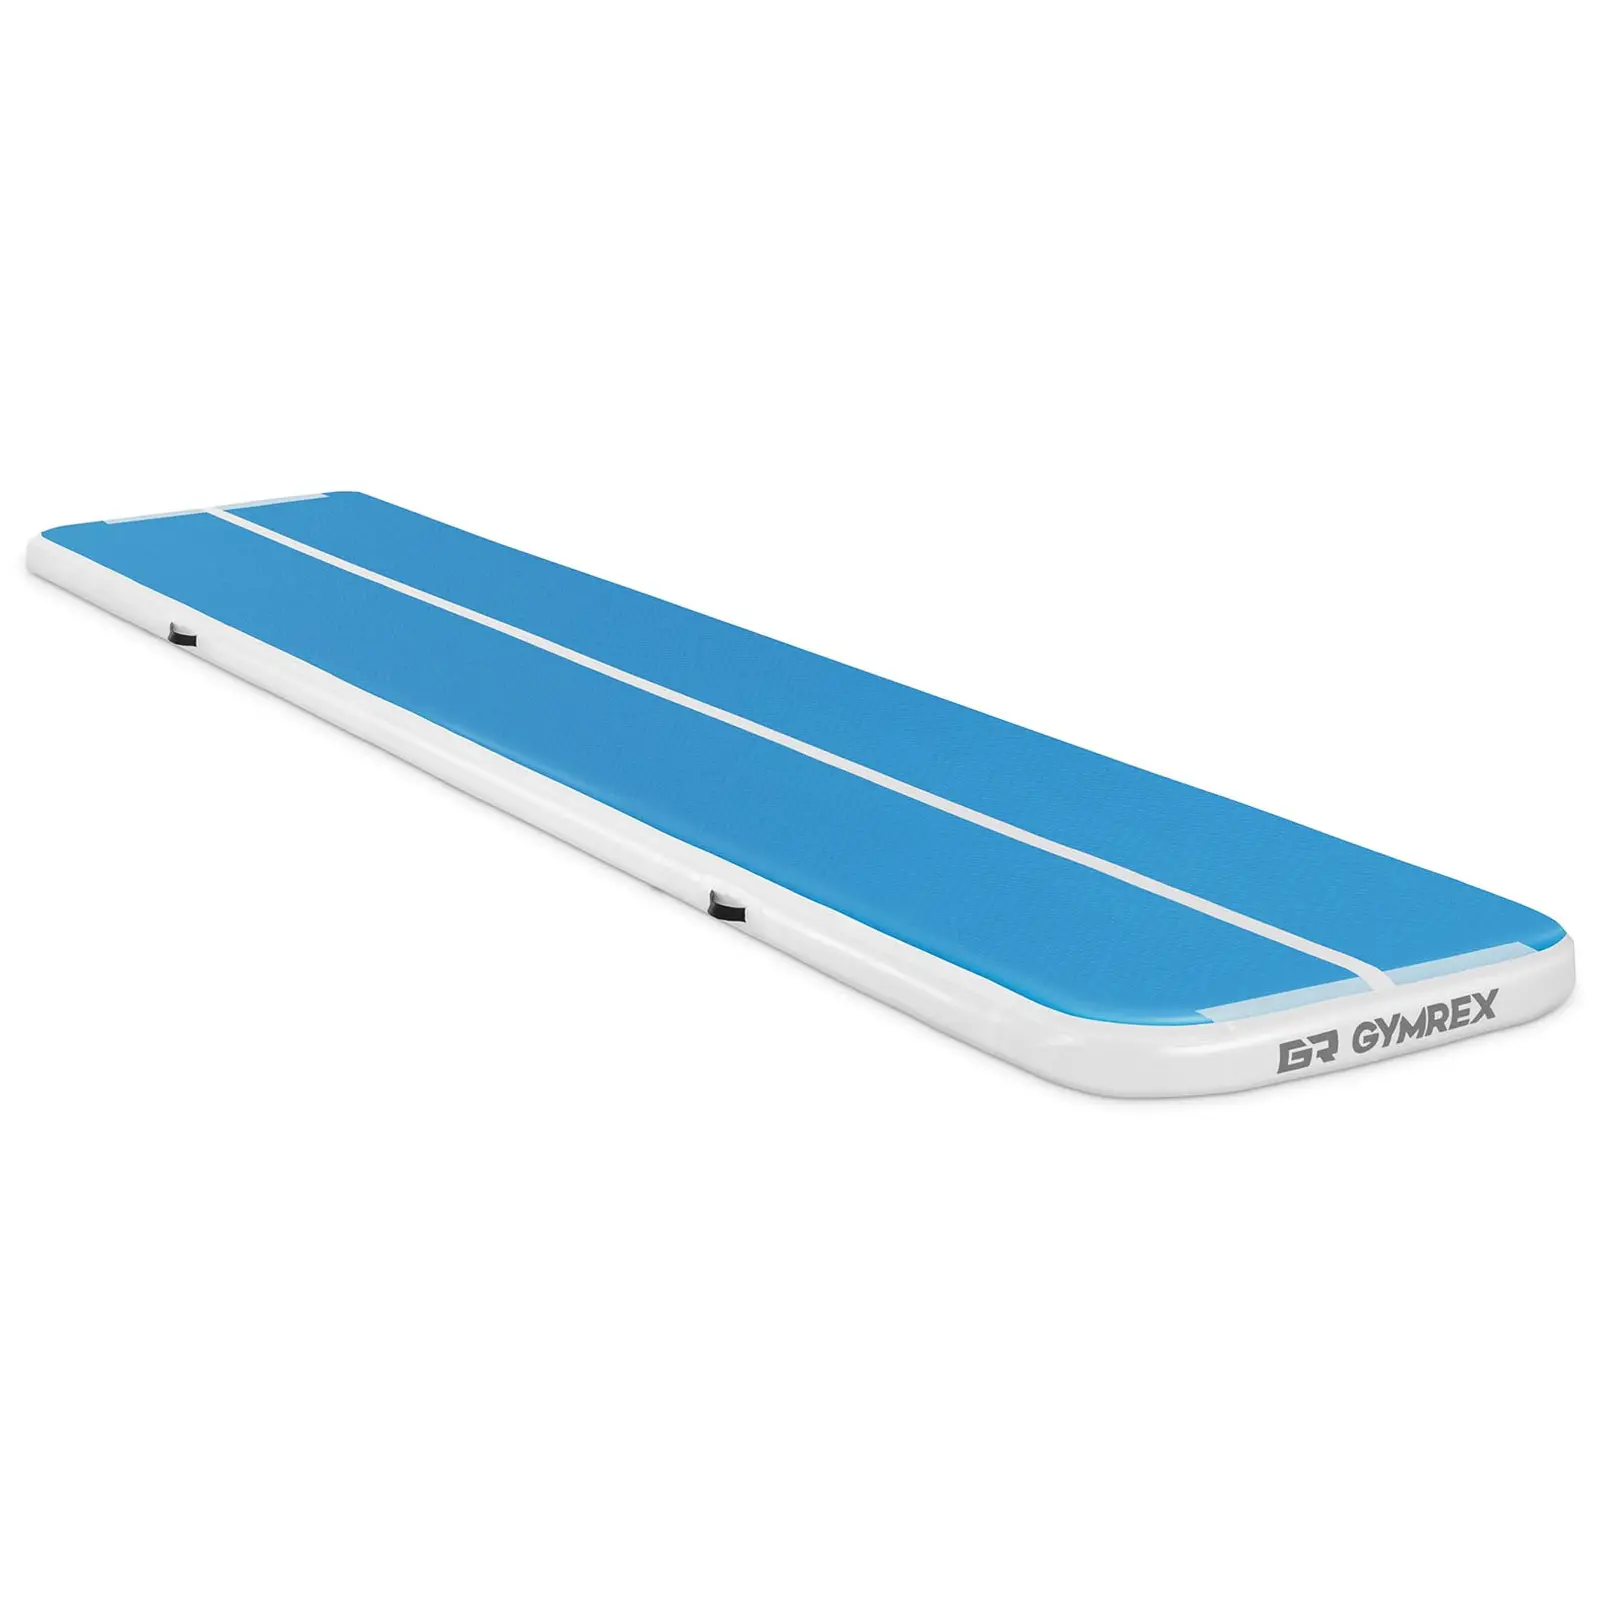 Oppblåsbar treningsmatte - 500 x 100 x 10 cm - 190 kg - blå/hvit